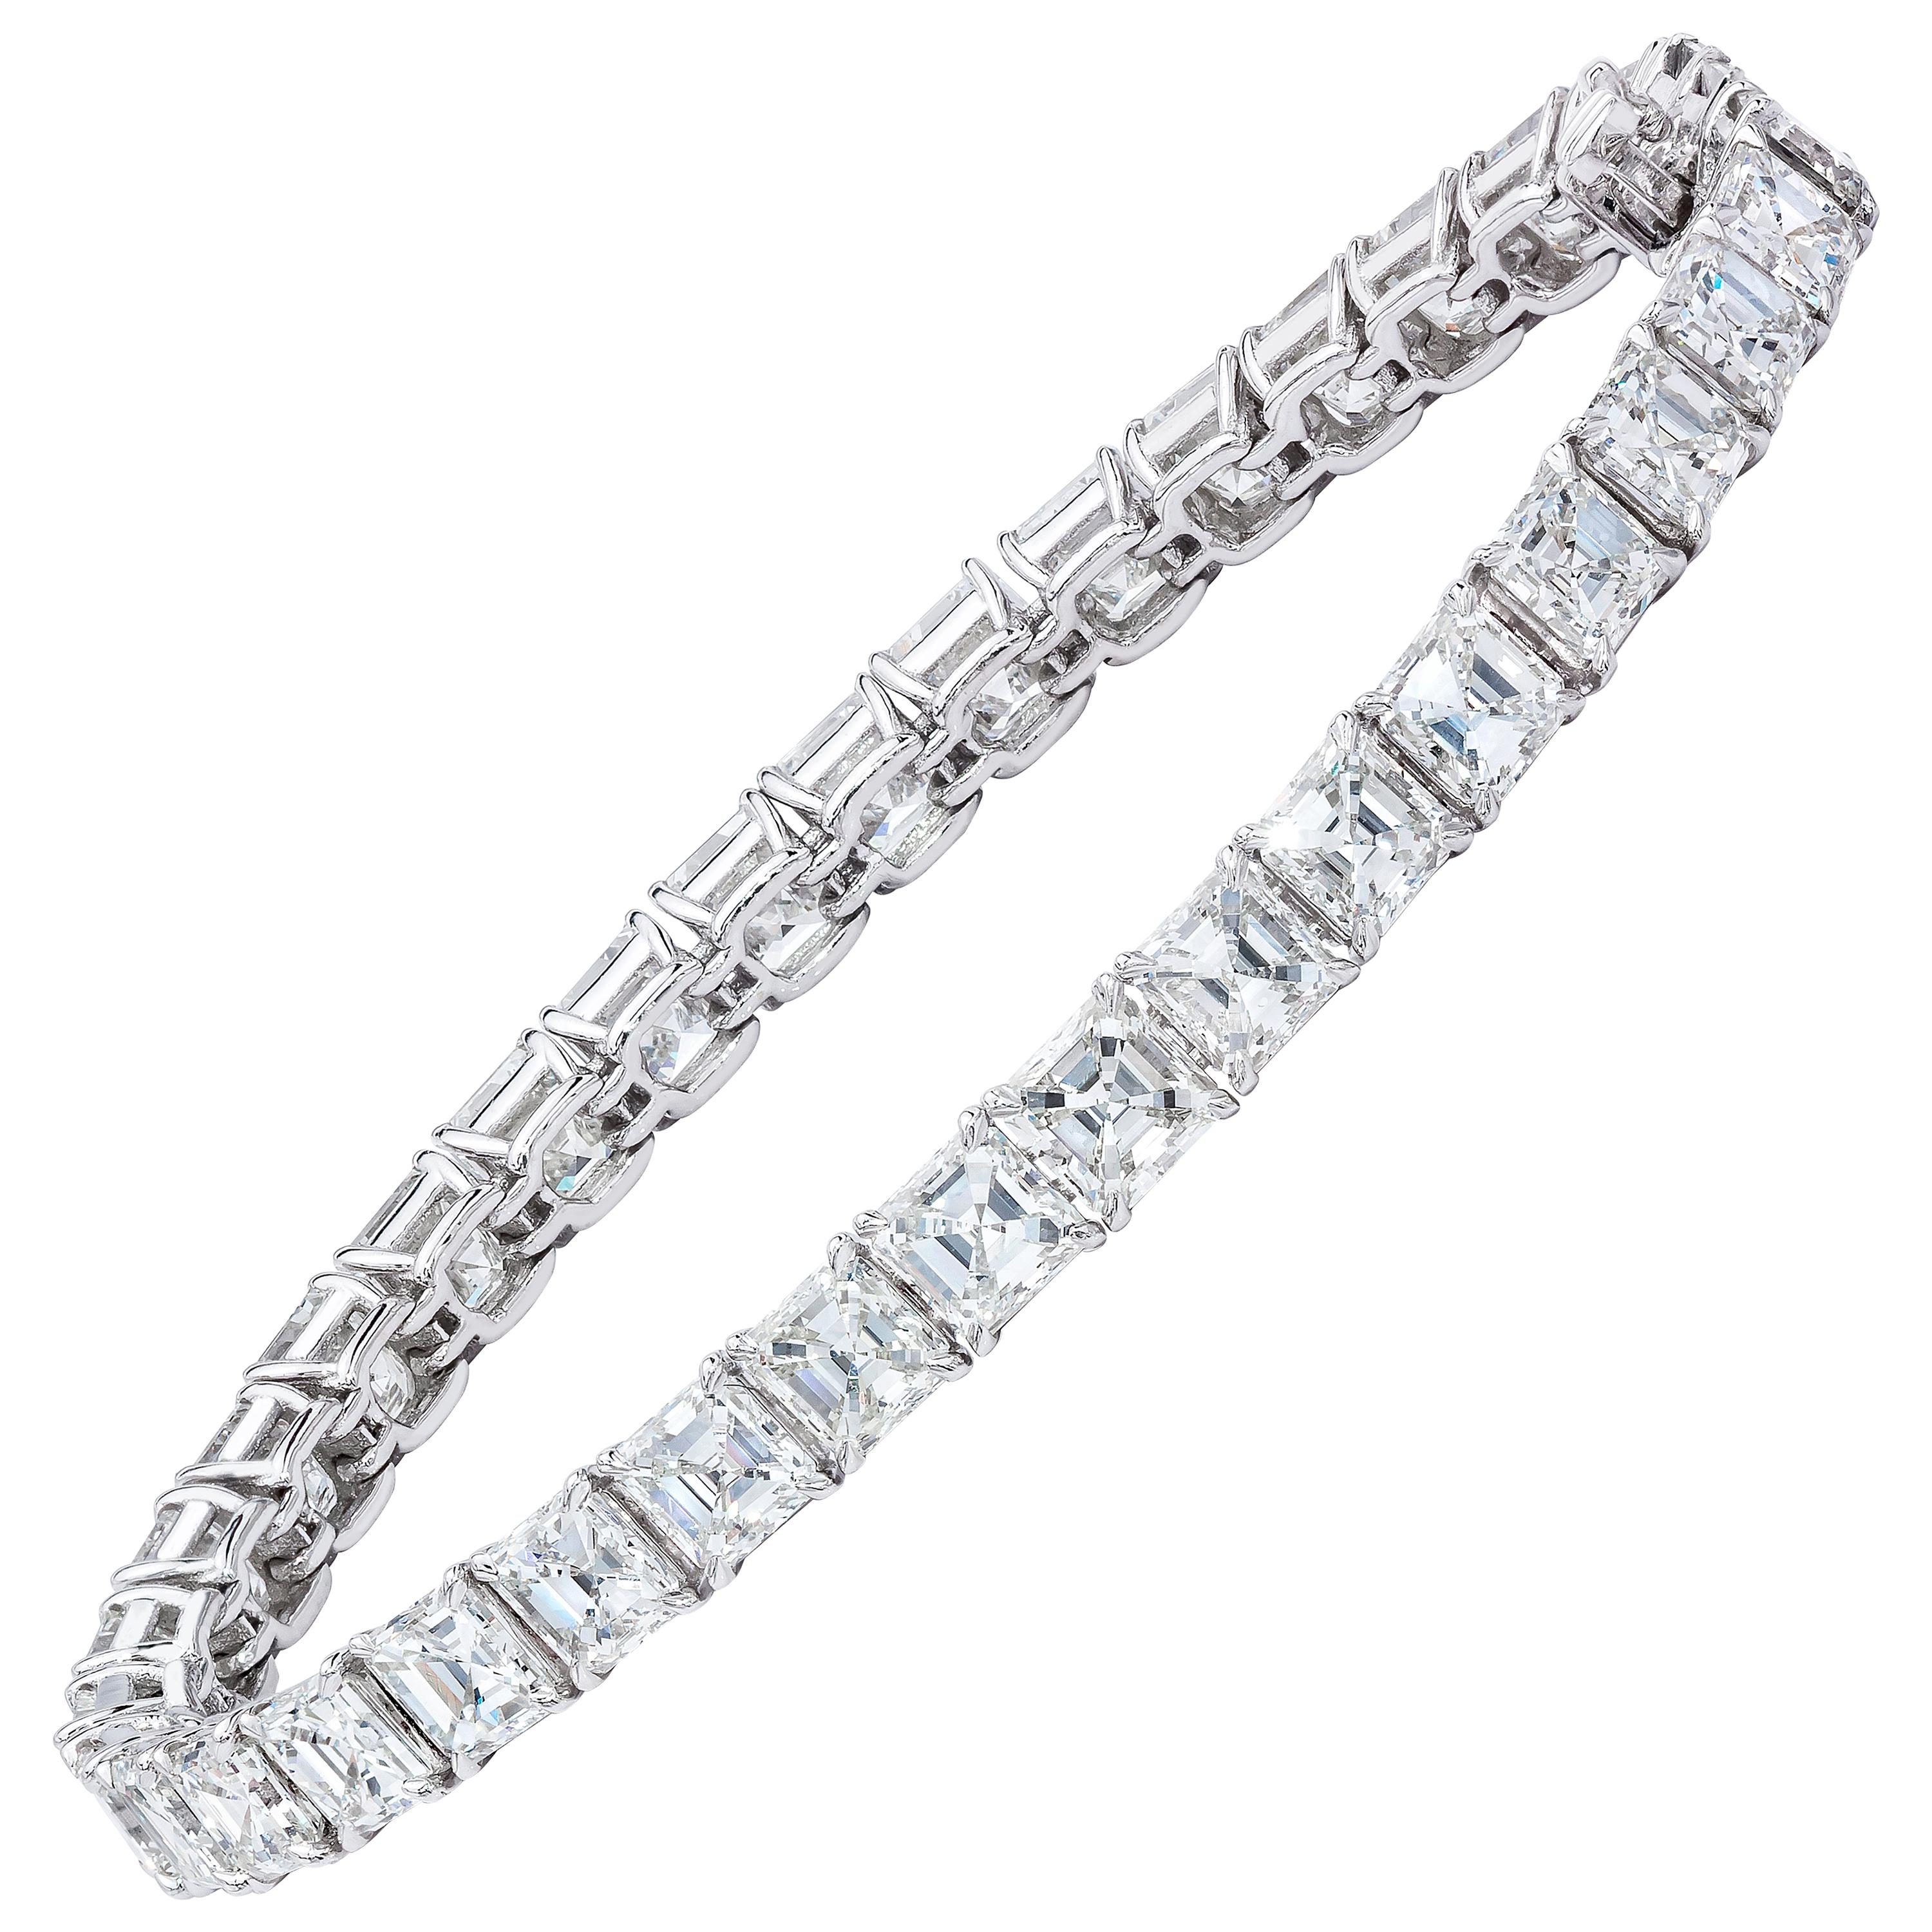 16.22 Carat Asscher Cut Diamond Tennis Bracelet For Sale